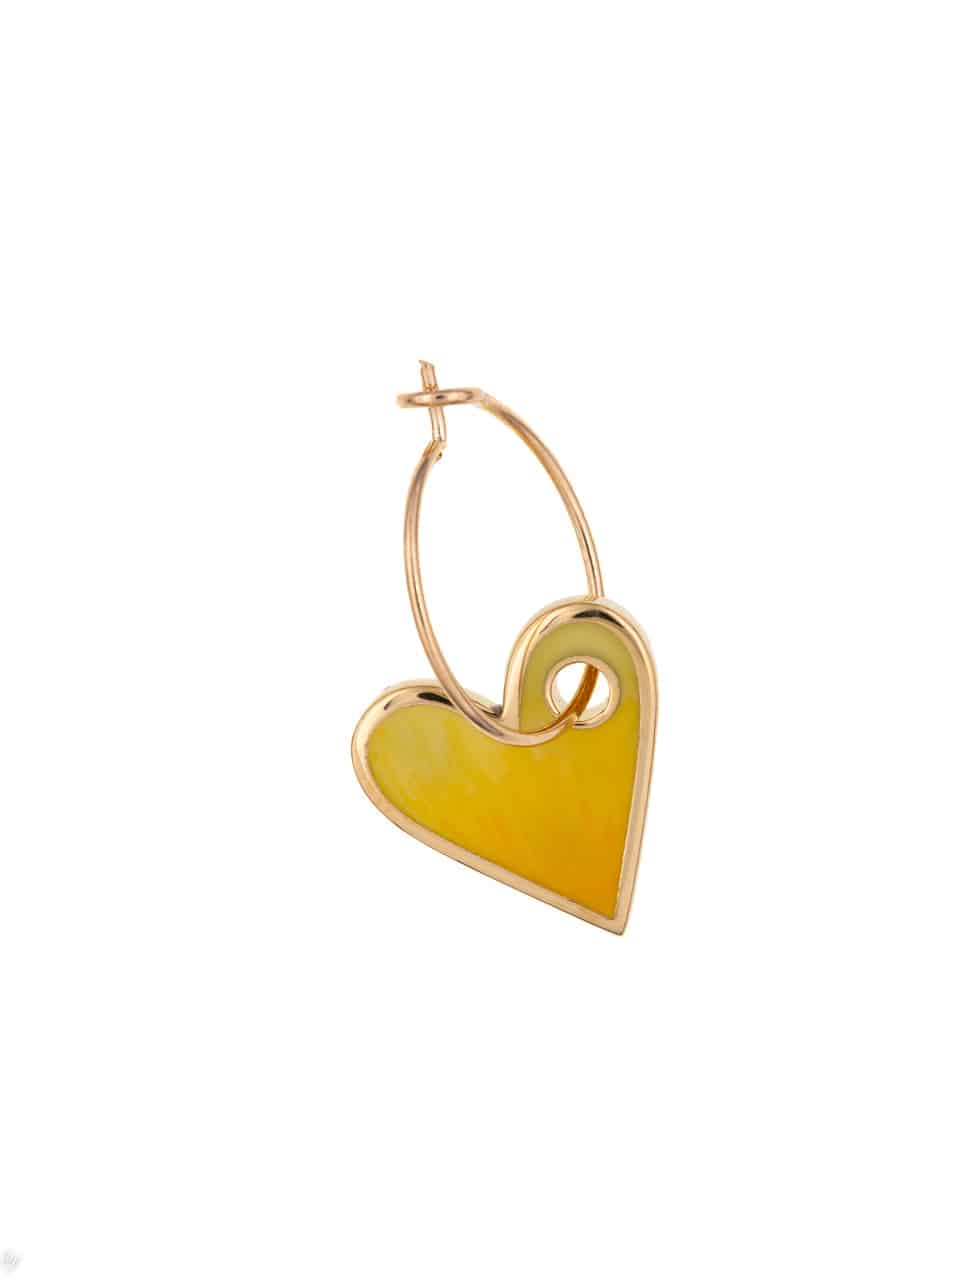 hoops-earring-yellow-enamel-heart-pendant-luj-paris-jewel